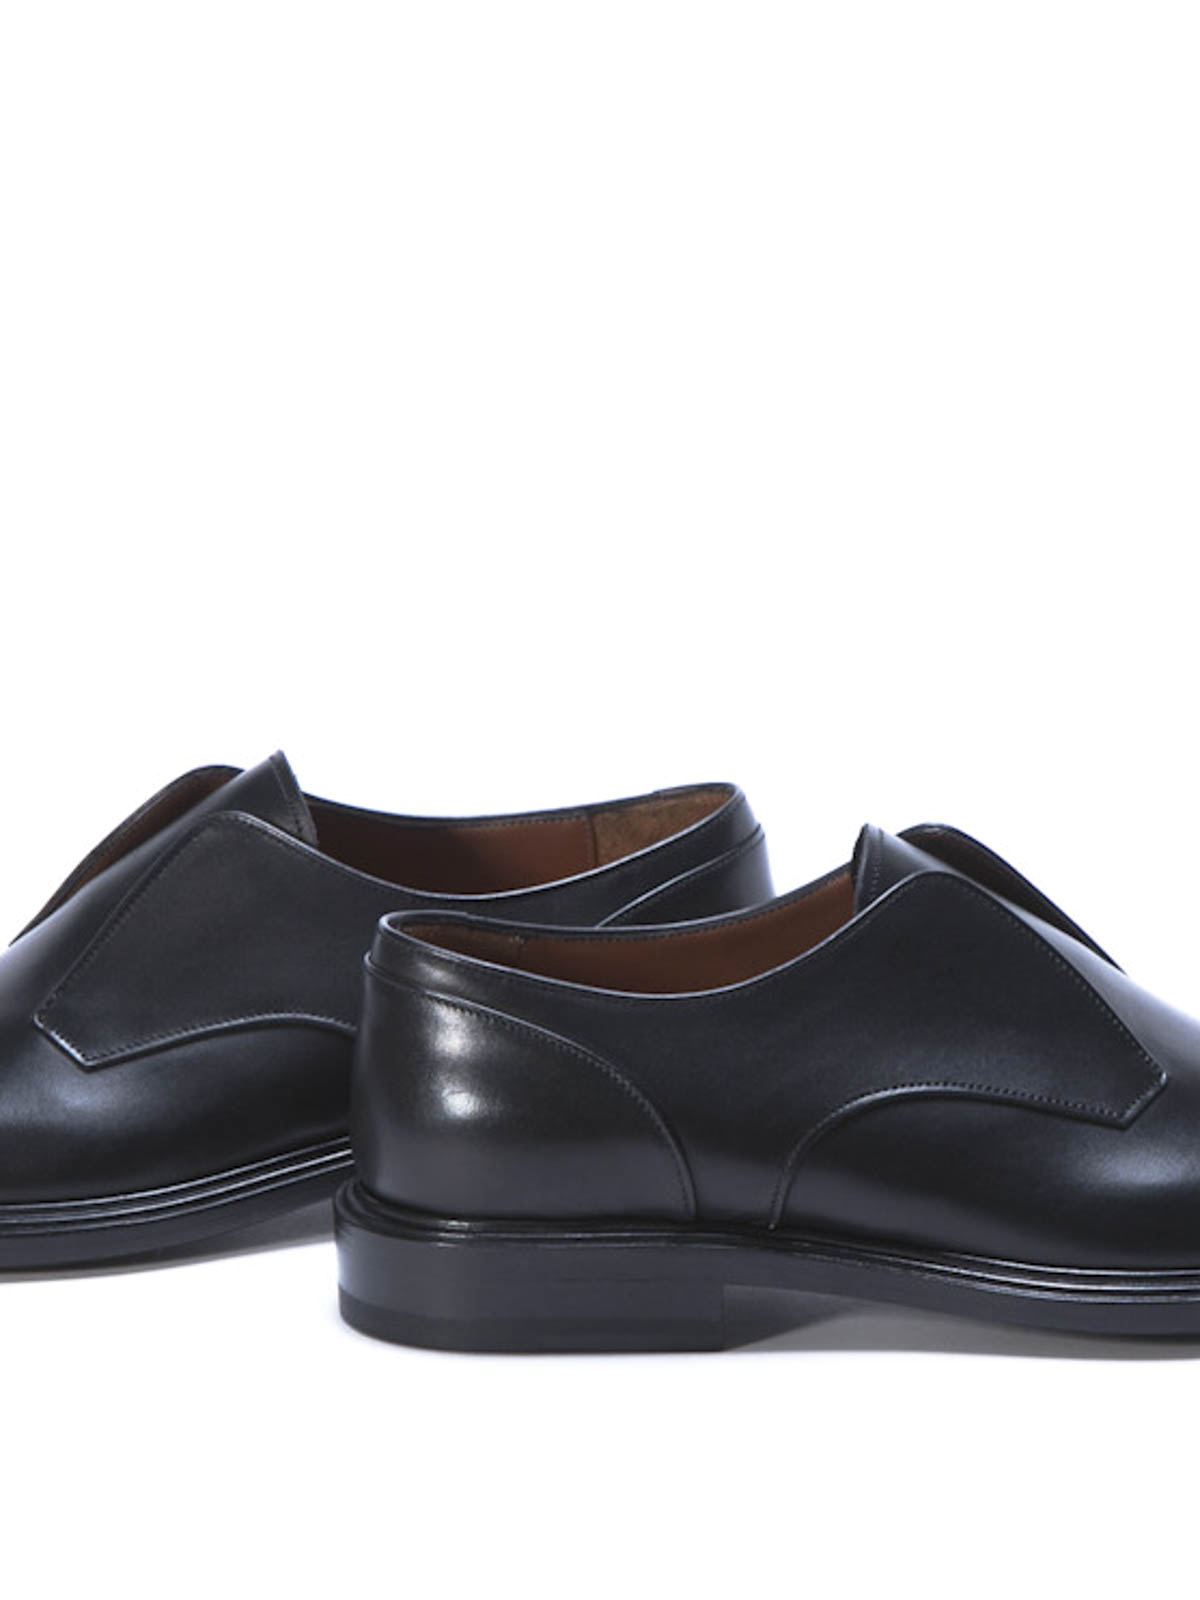 Acquisti Online 2 Sconti su Qualsiasi Caso scarpe classiche senza lacci E  OTTIENI IL 70% DI SCONTO!